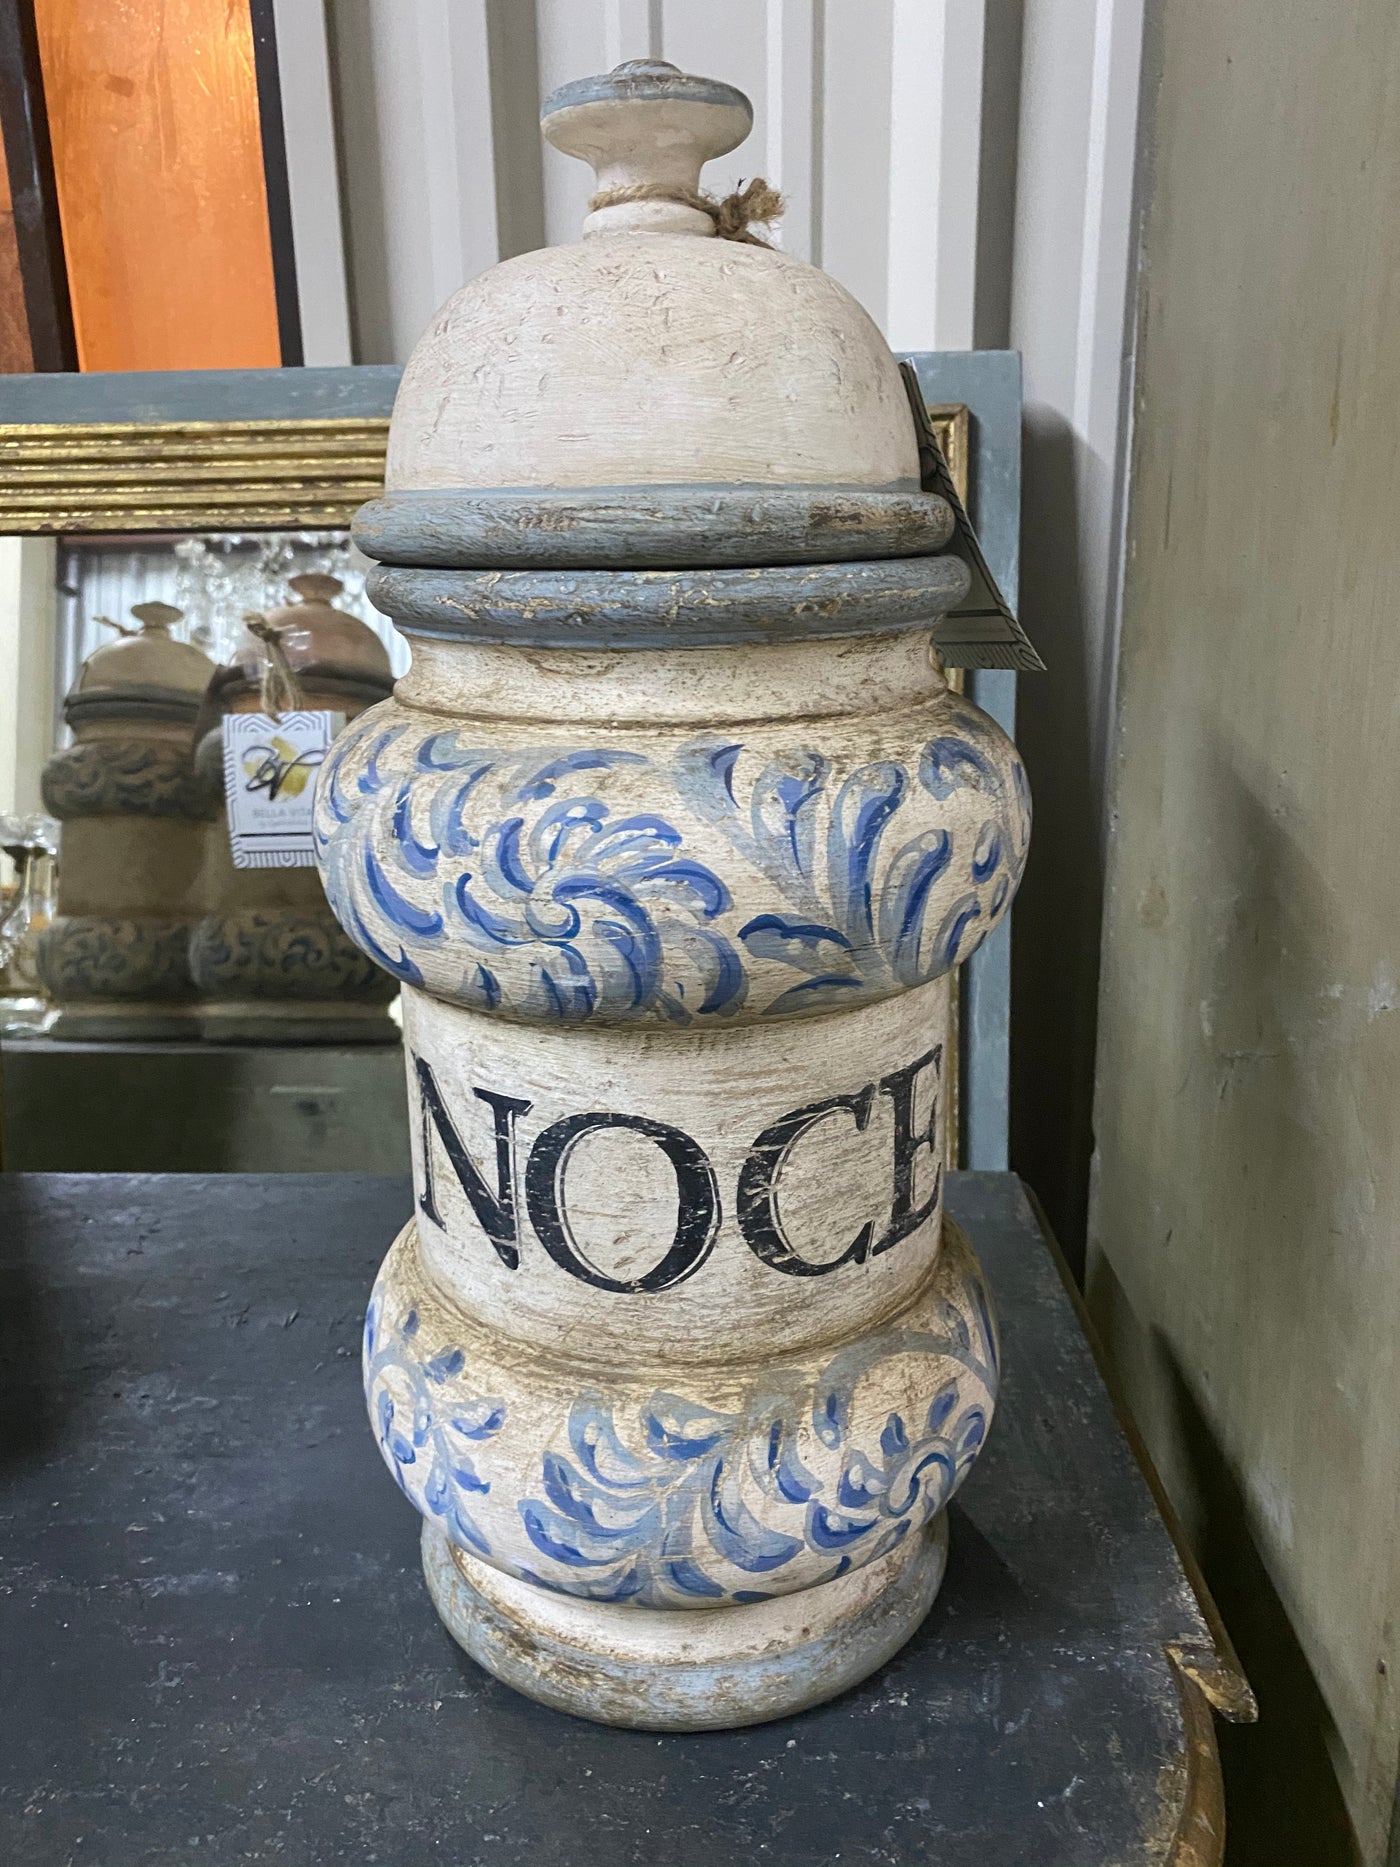 Painted “Noce” Jar